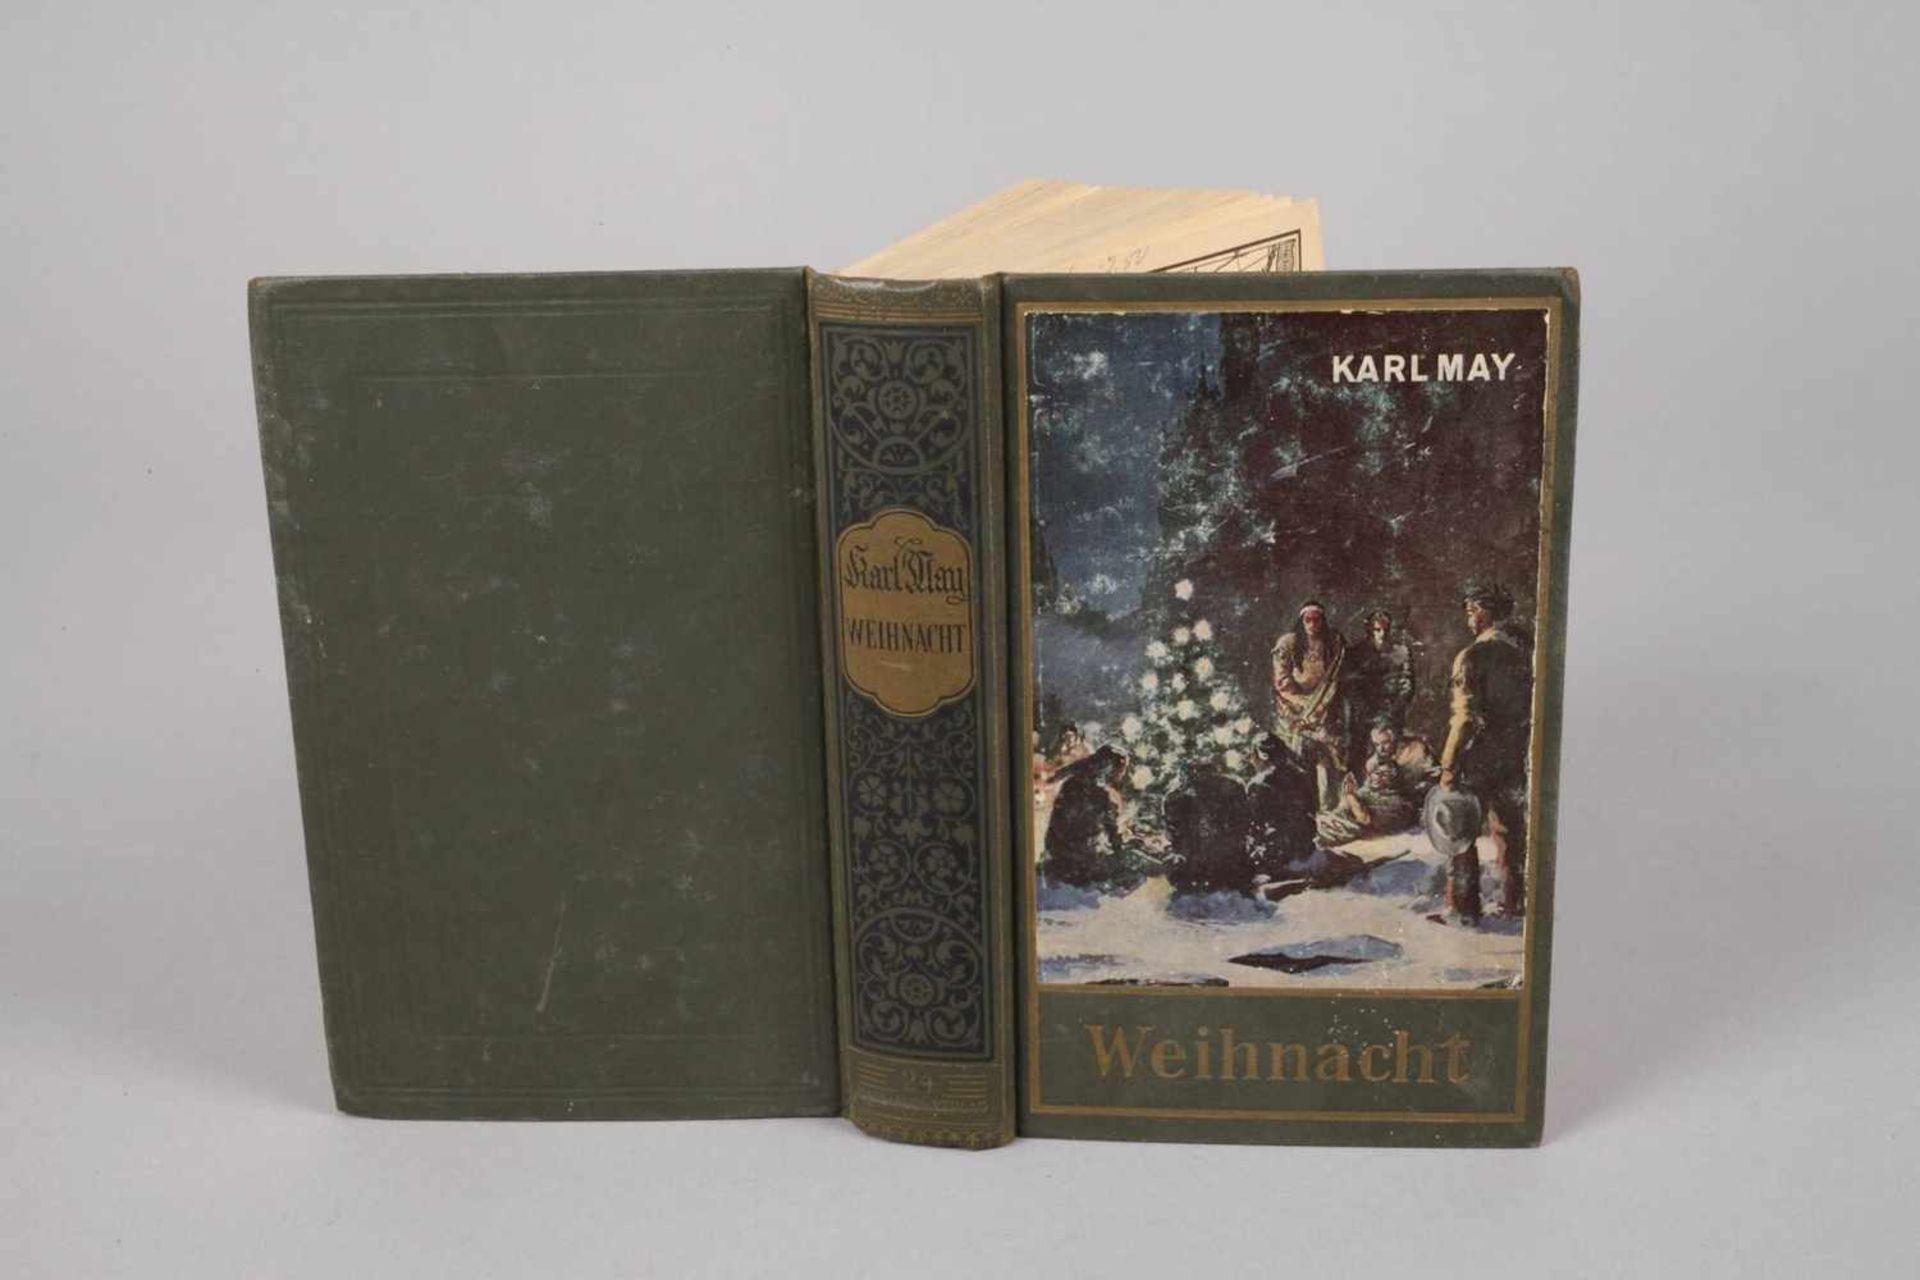 Karl May, WeihnachtKarl-May-Verlag Bamberg 1953, Format Kl. 8°, 500 S., Leineneinband, normale - Bild 2 aus 3